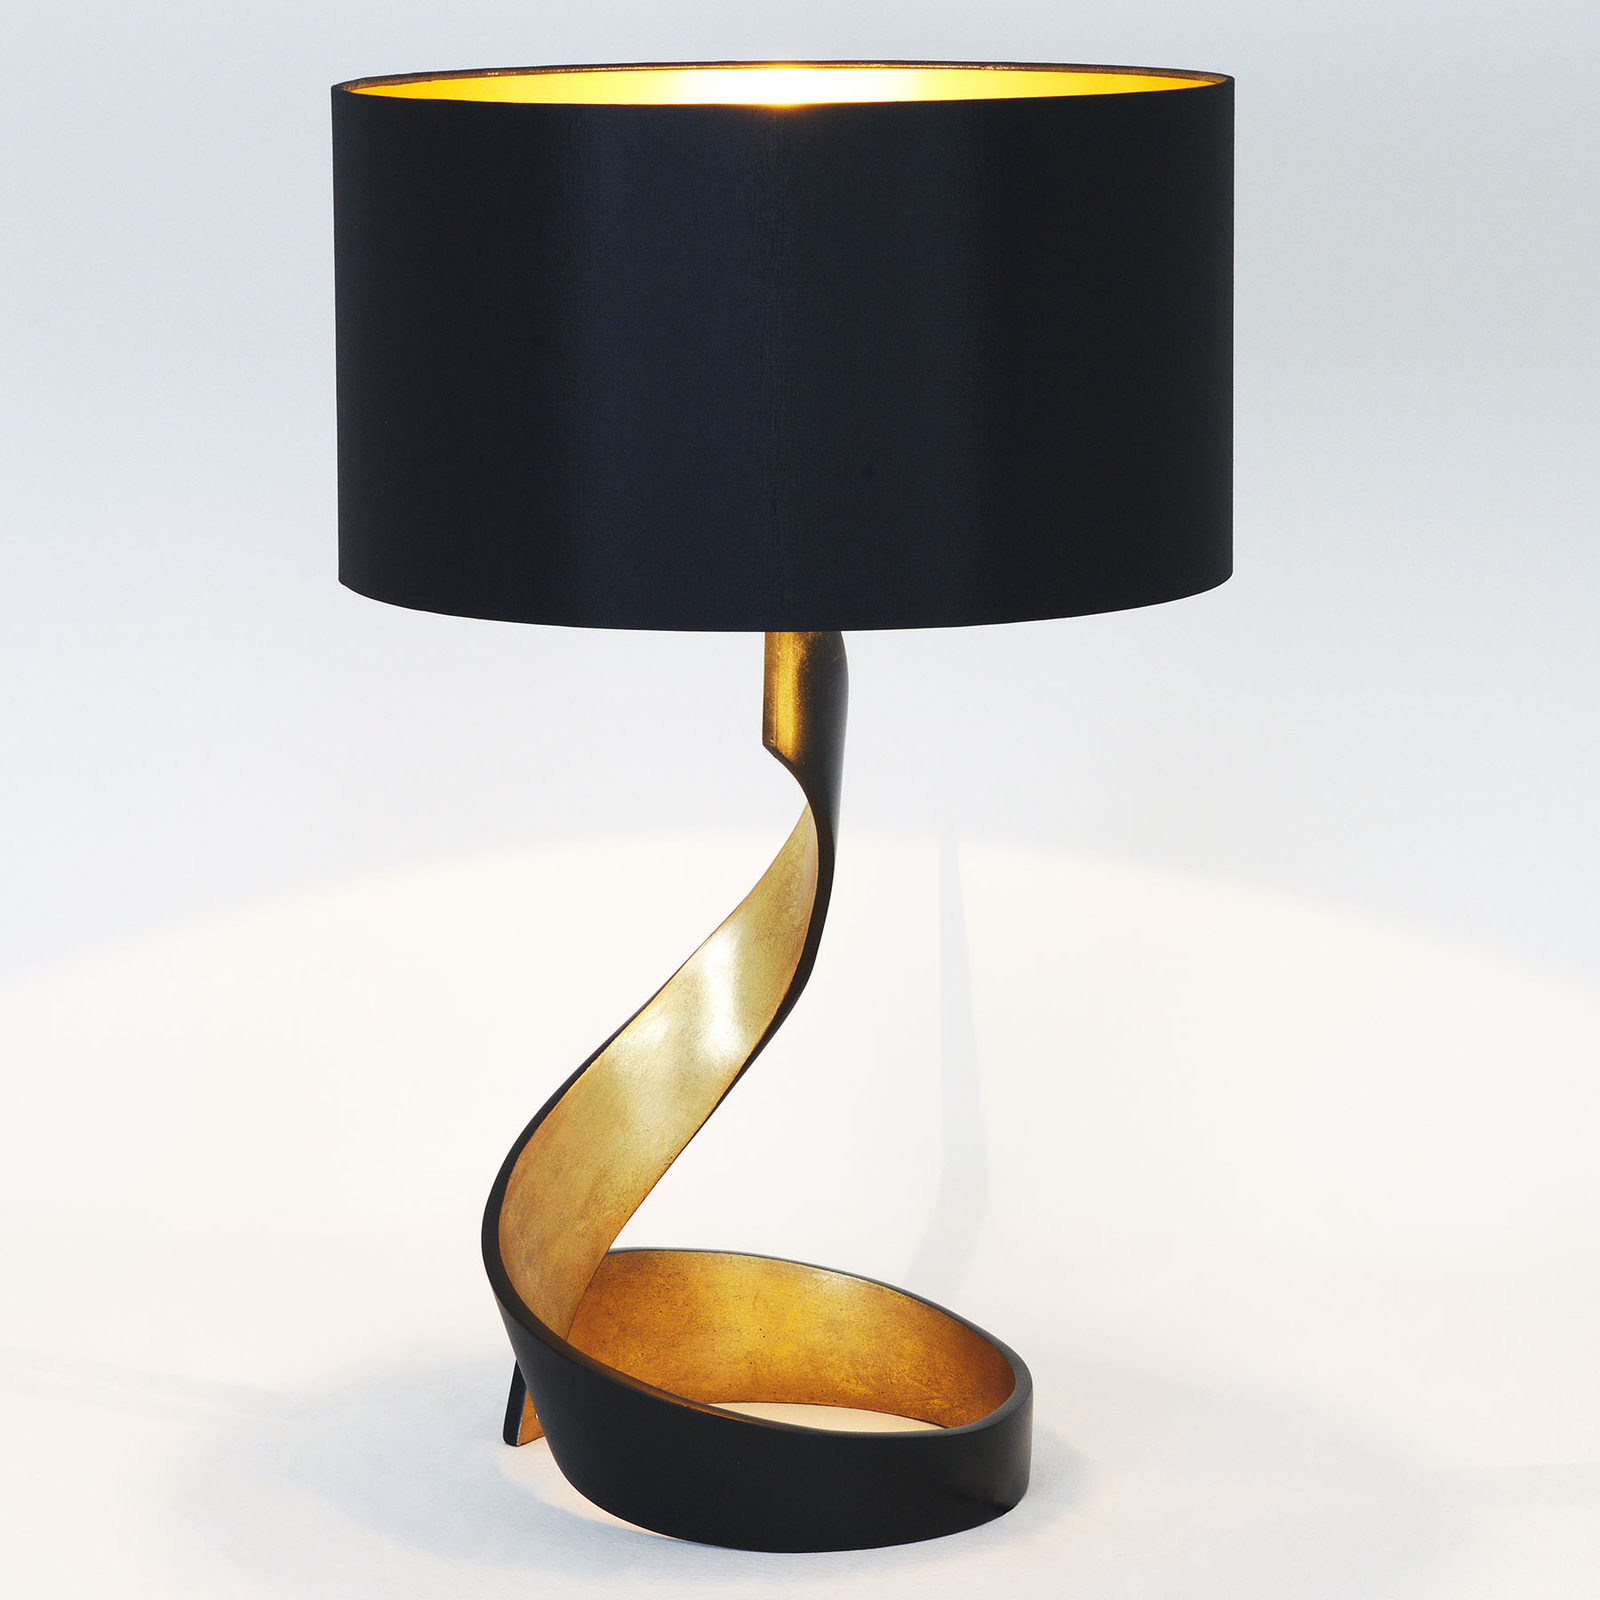 Stolní lampa Vortice, černo-zlatá